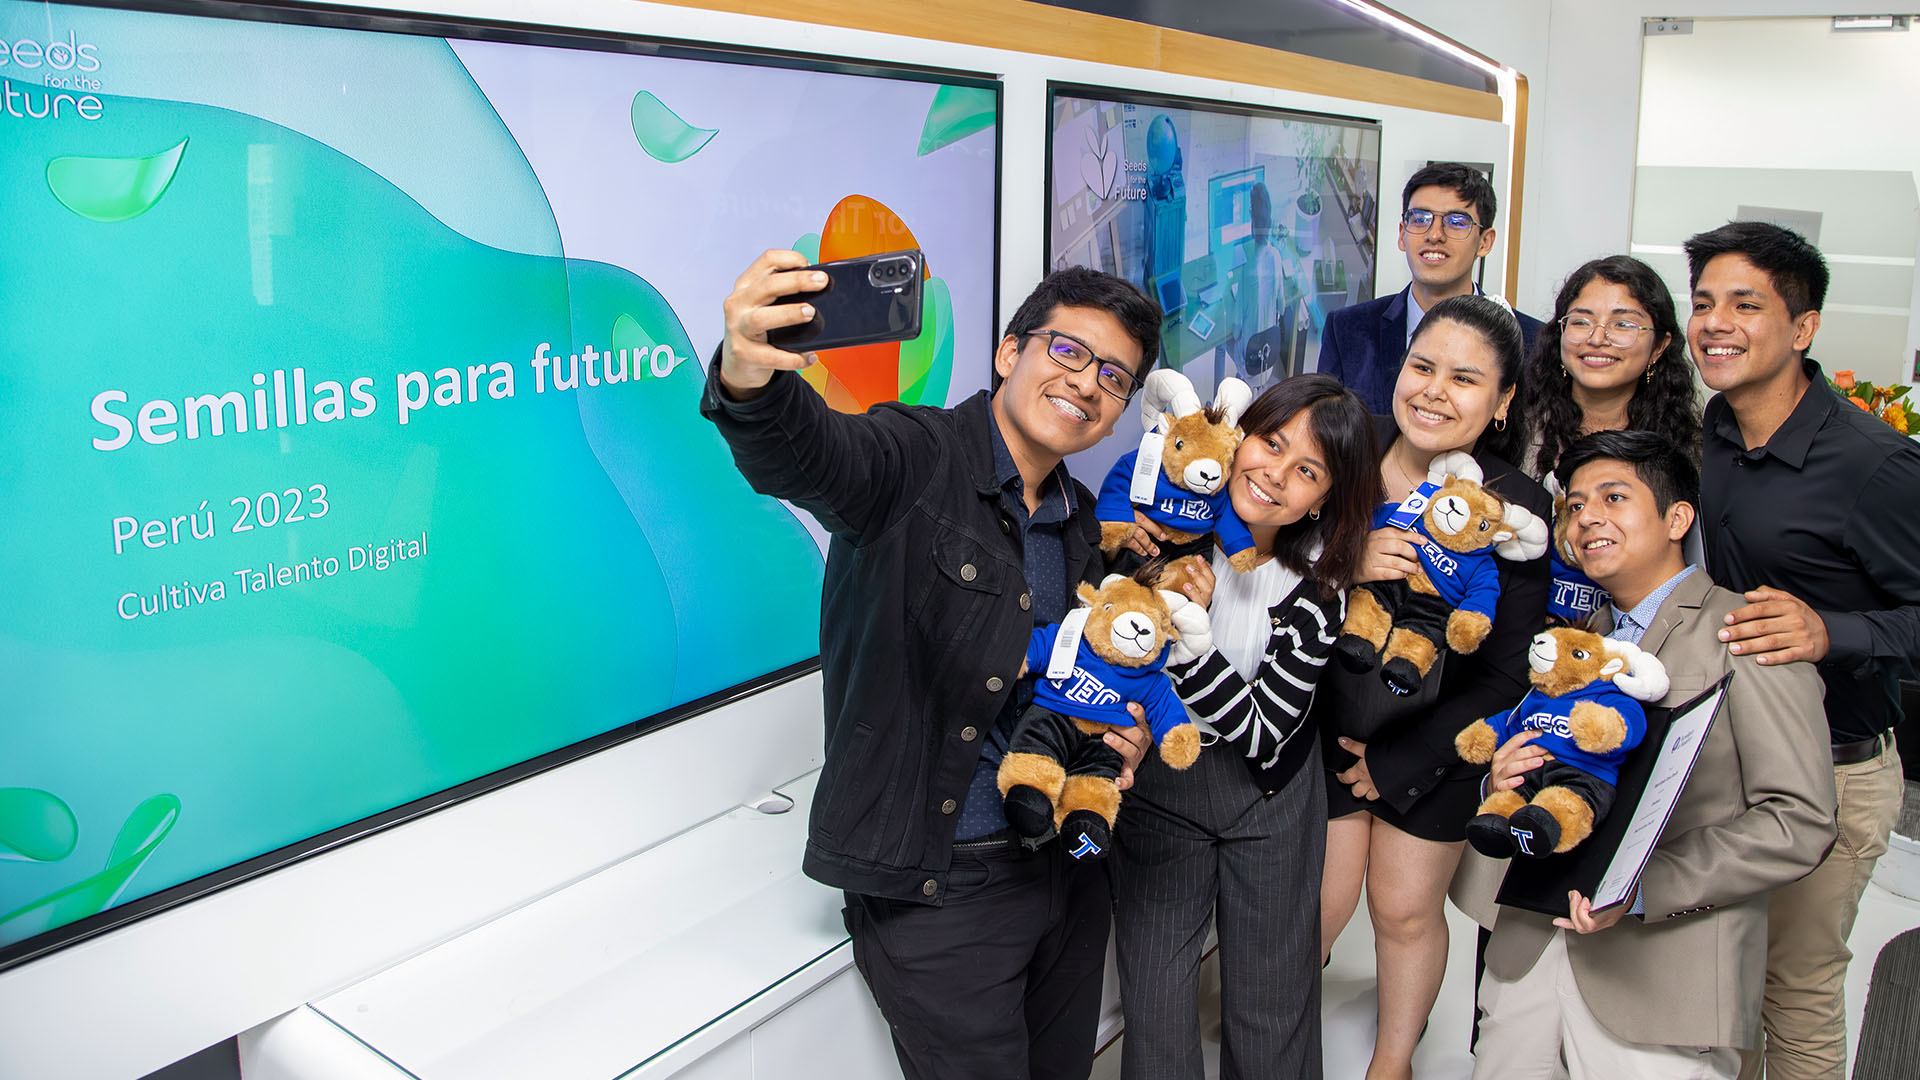 7 estudiantes PUCP participaron en Seed for the future de Huawei